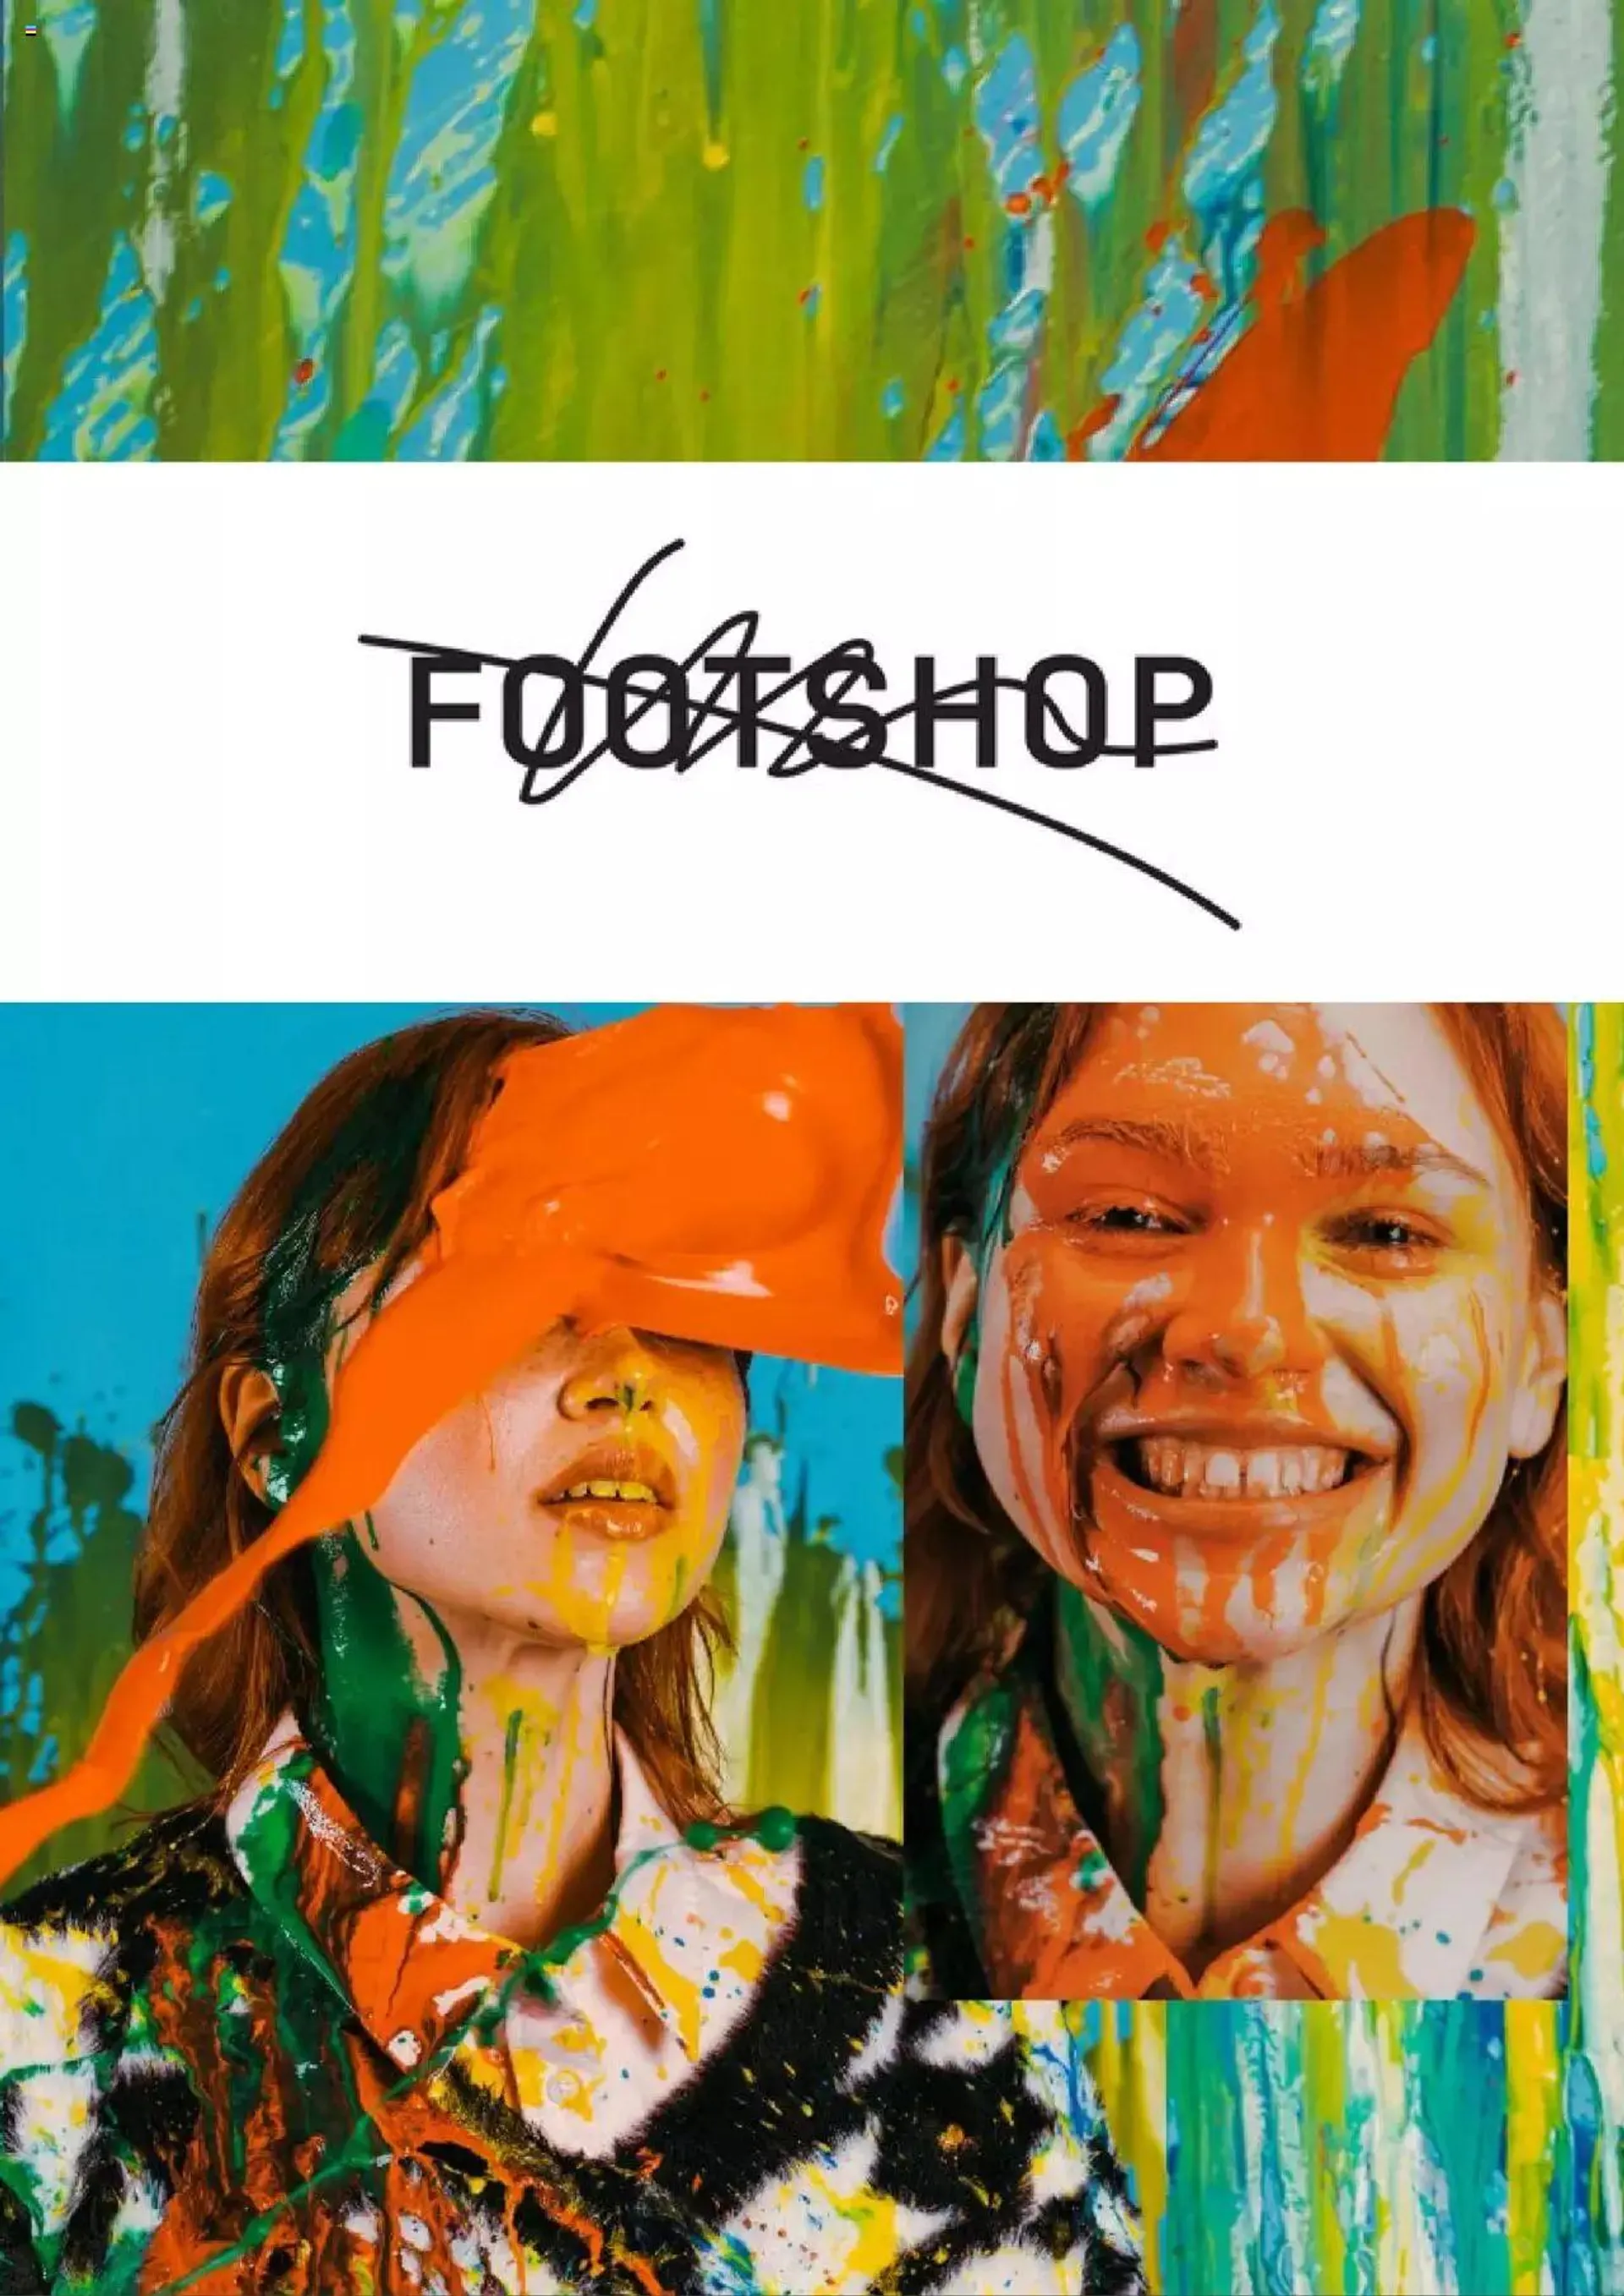 Catalog Footshop - 0